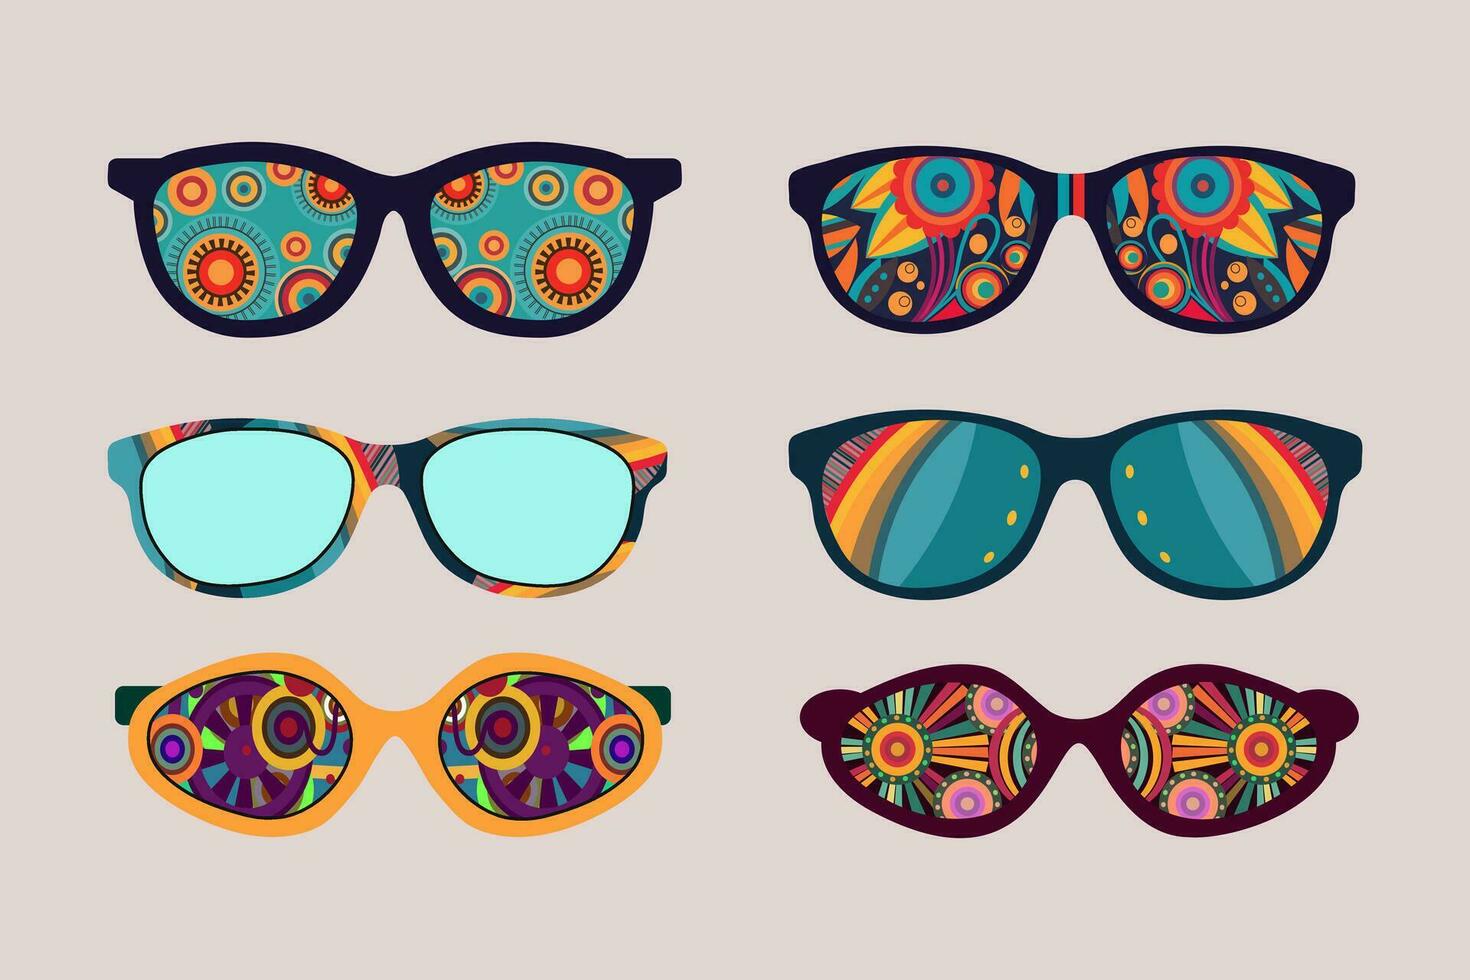 impostato di geometrico astratto occhiali da sole.anni '70 retrò hippie style.vibes impaurito occhiali con deco elementi.vintage nostalgia psichedelico elementi. vettore